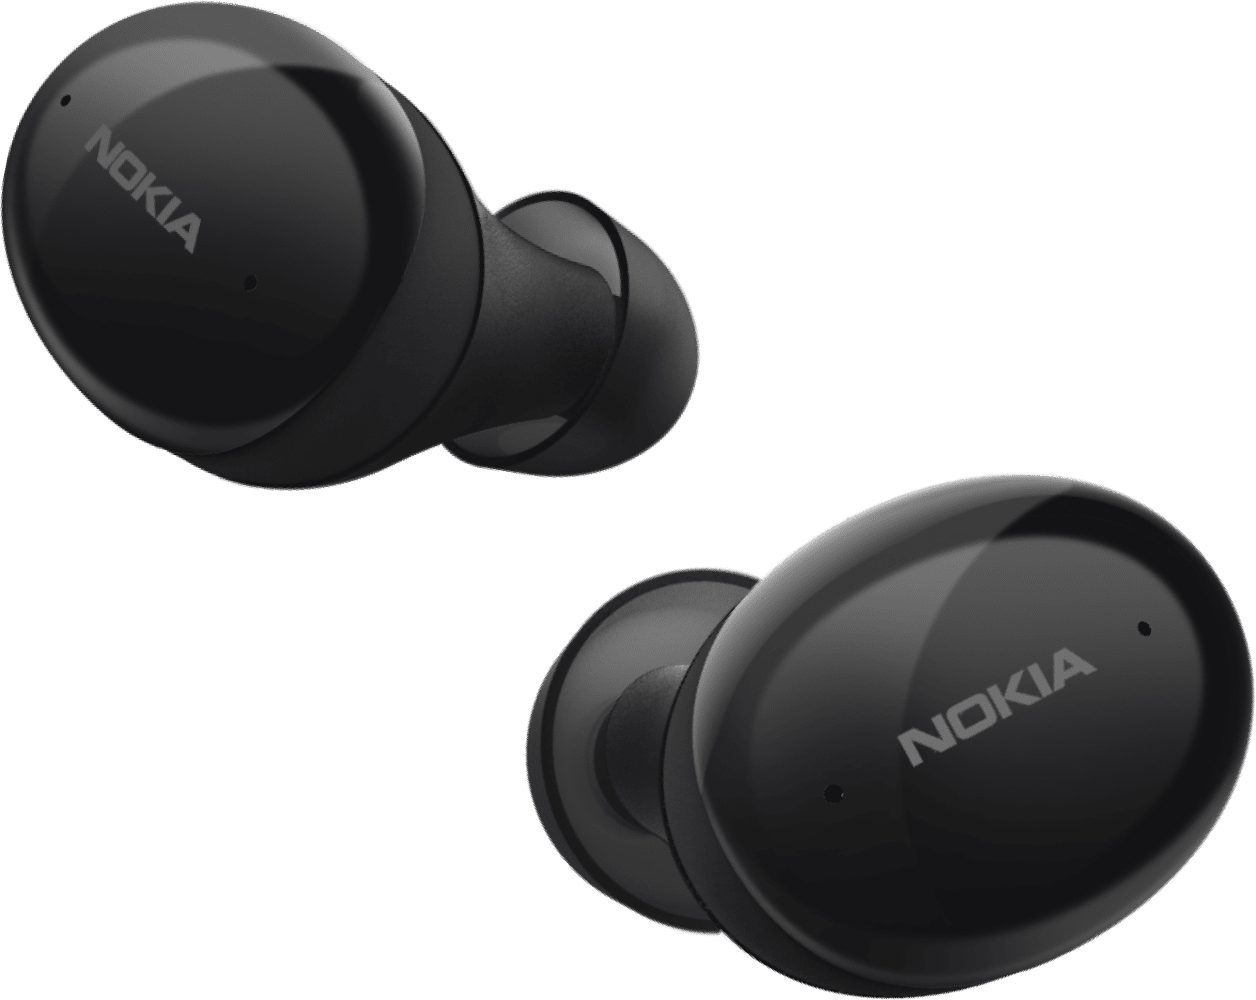 Enlarge Black Nokia Comfort Earbuds  from Back